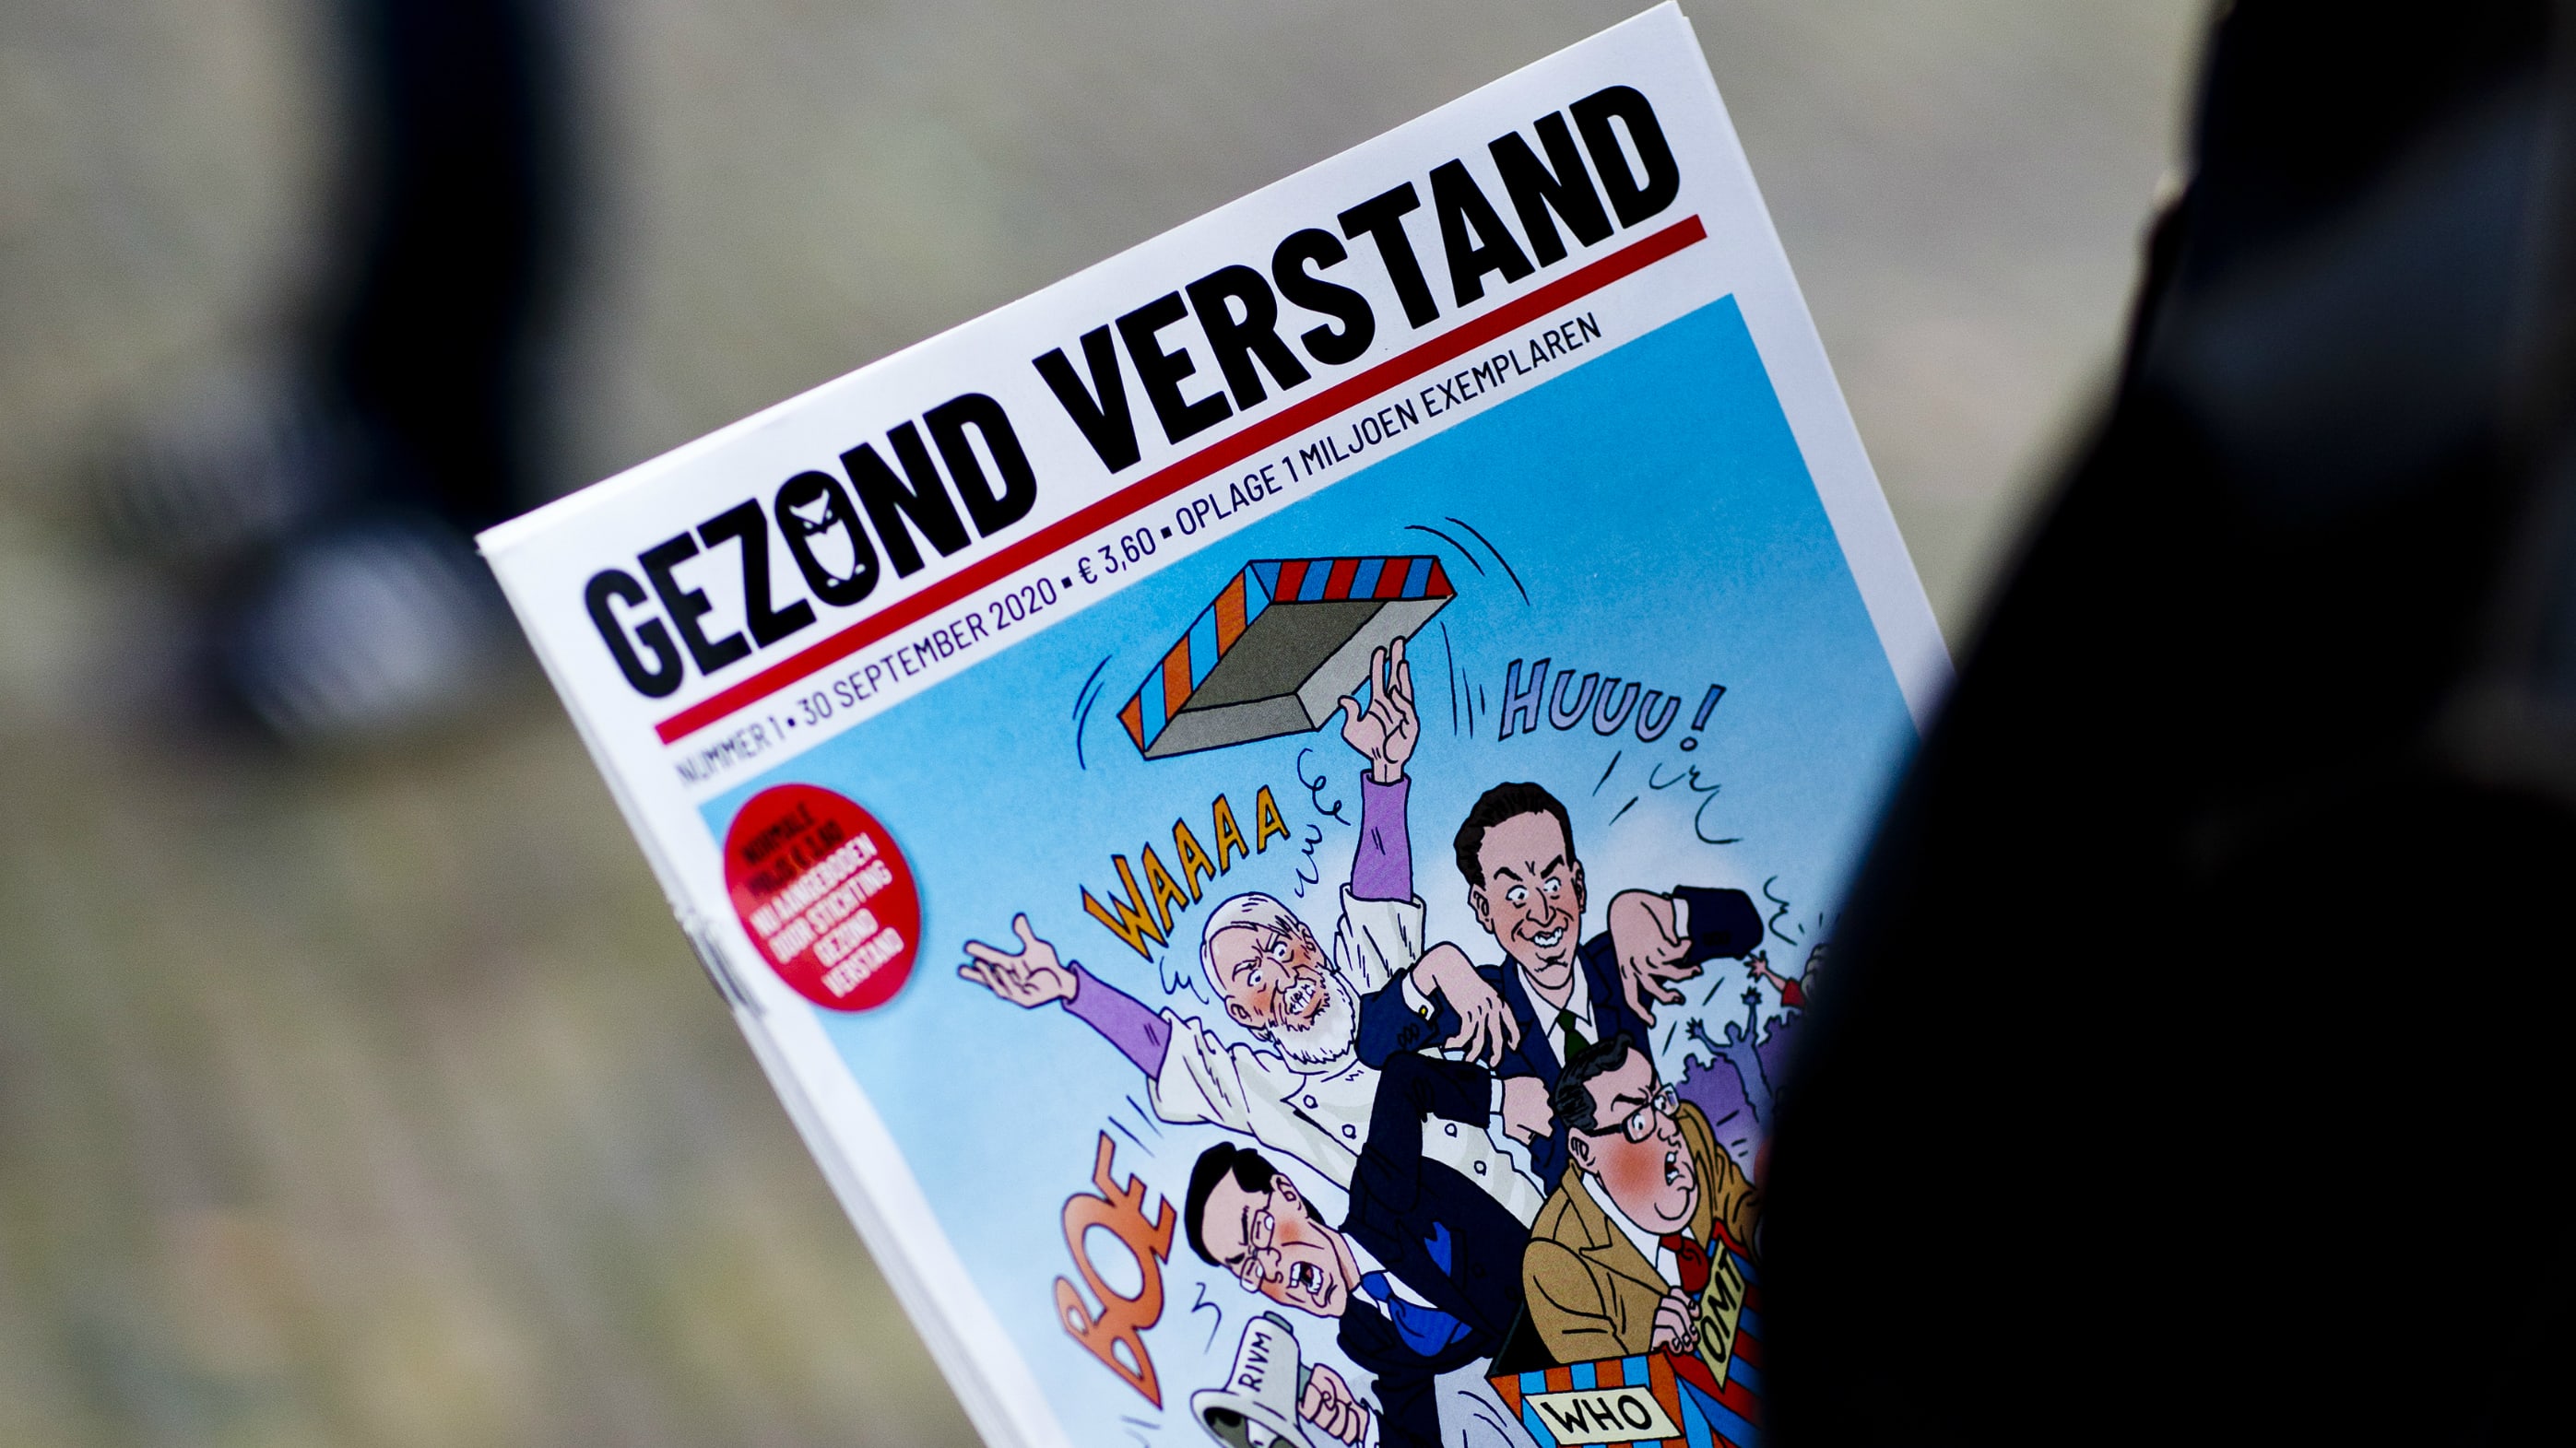 Meerderheid Nederlanders wil tijdschriften met complottheorieën uit de winkels